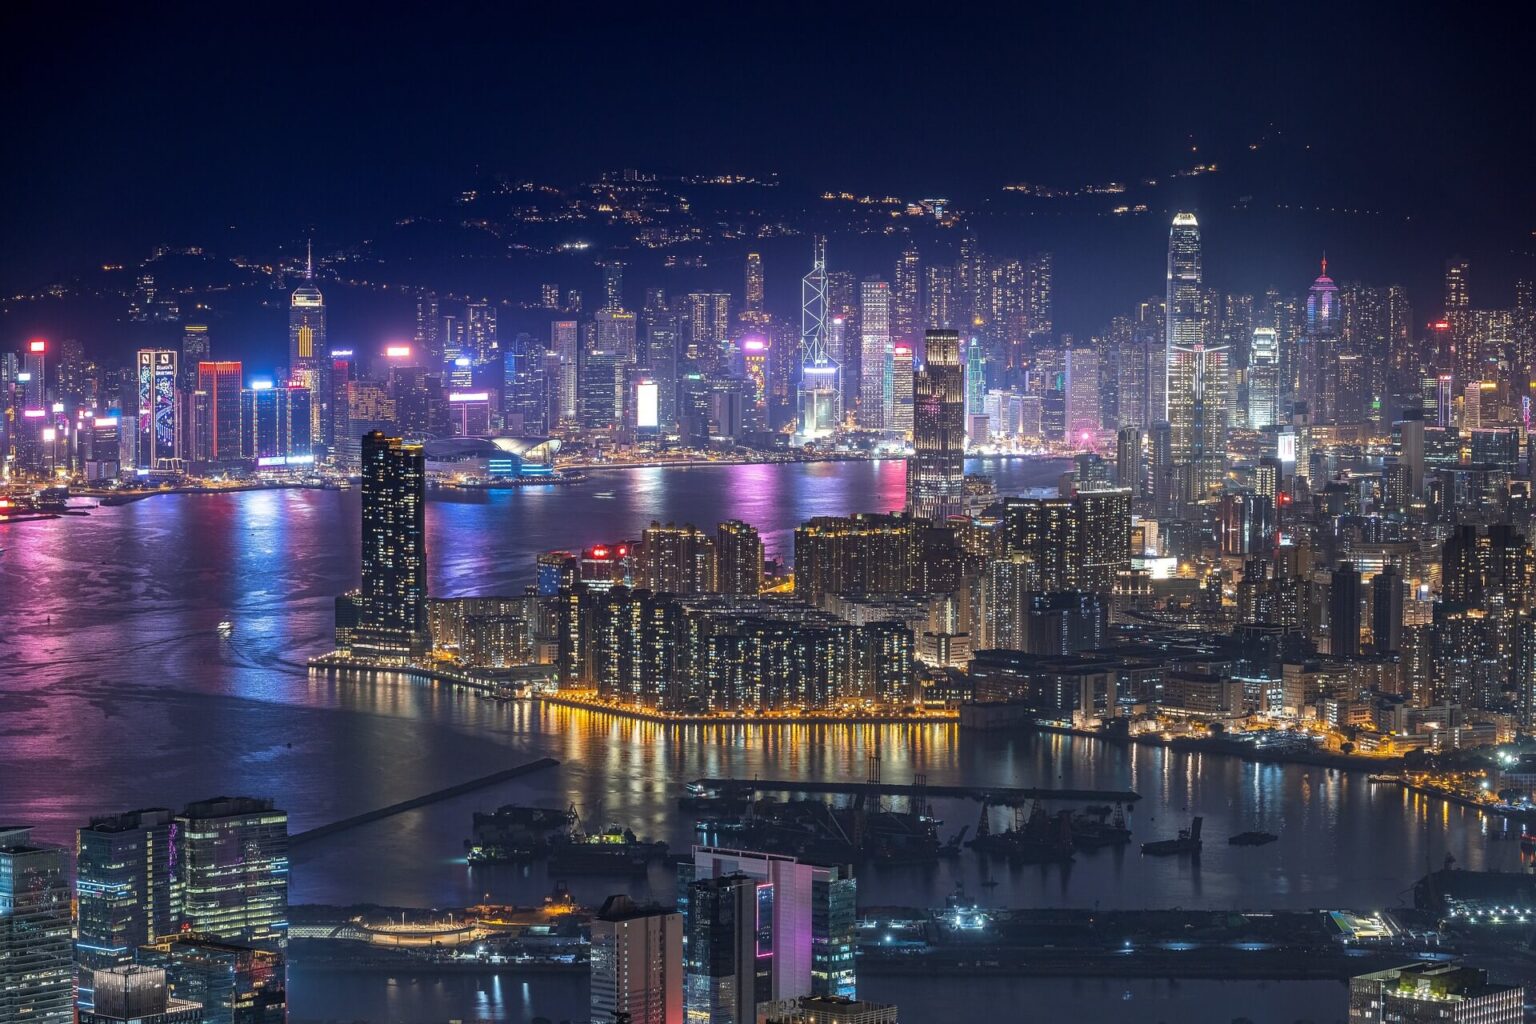 Hong Kong gets back into digital asset regulation